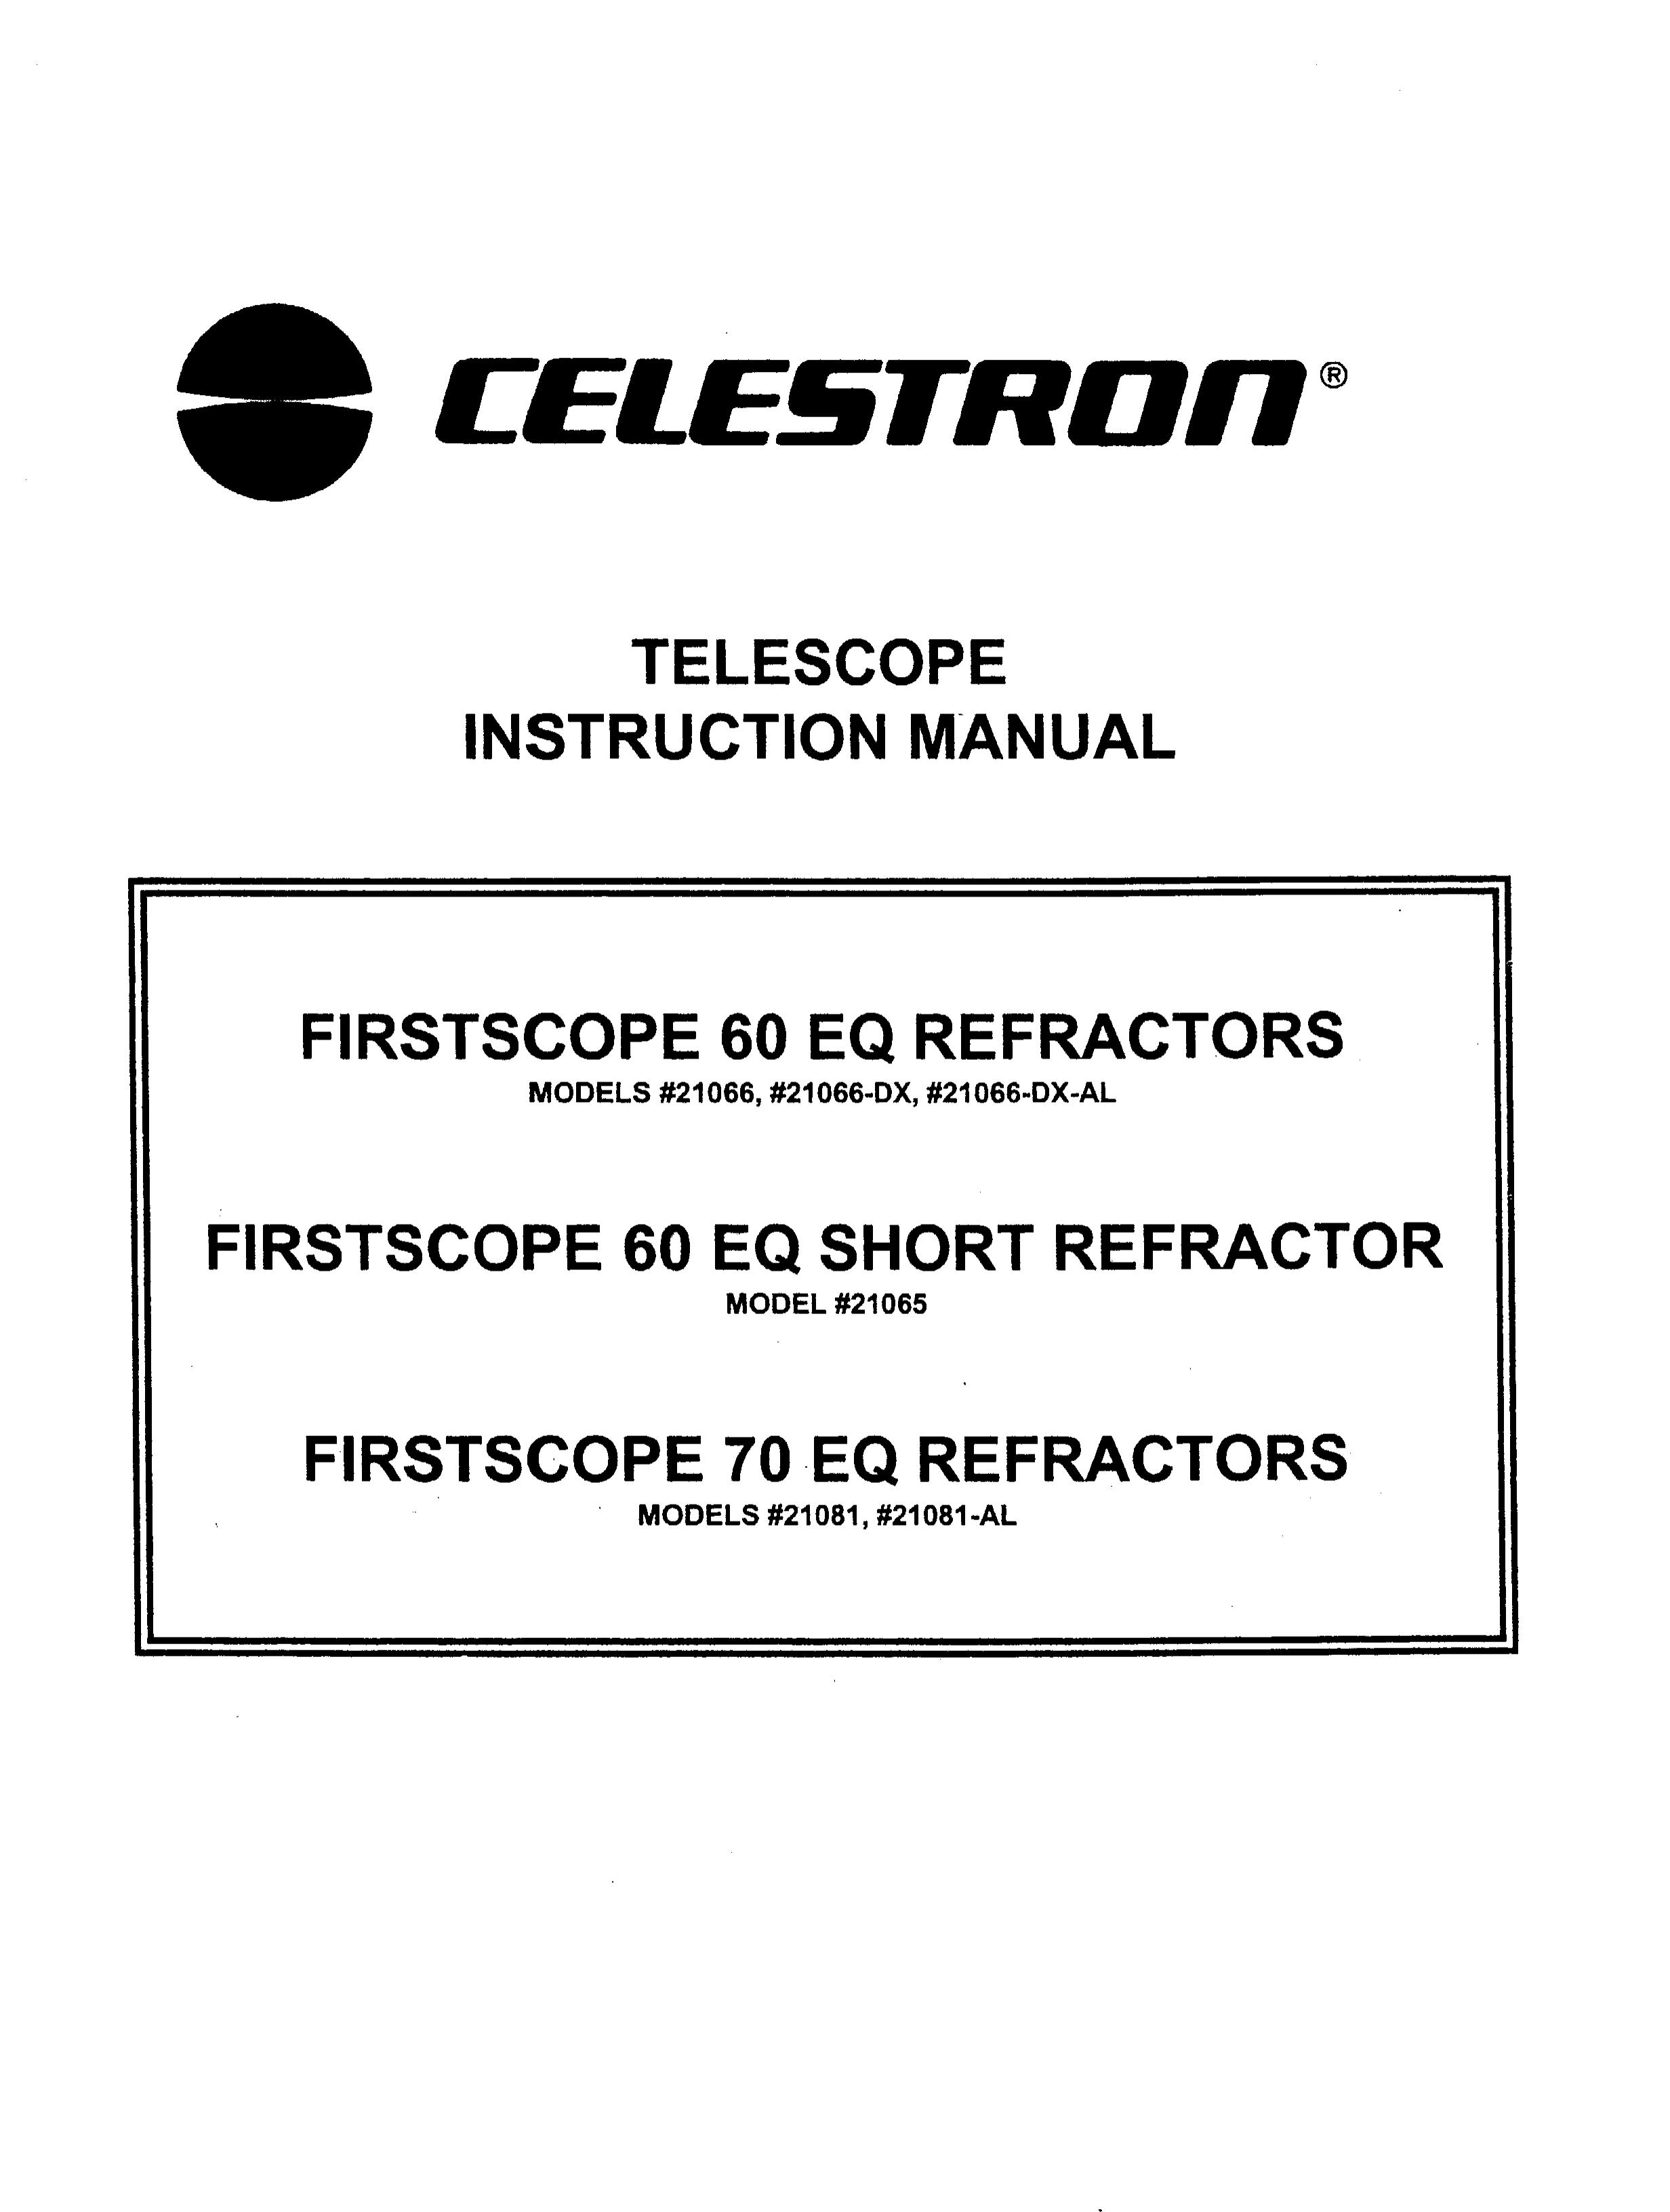 Celestron 21066 Telescope User Manual